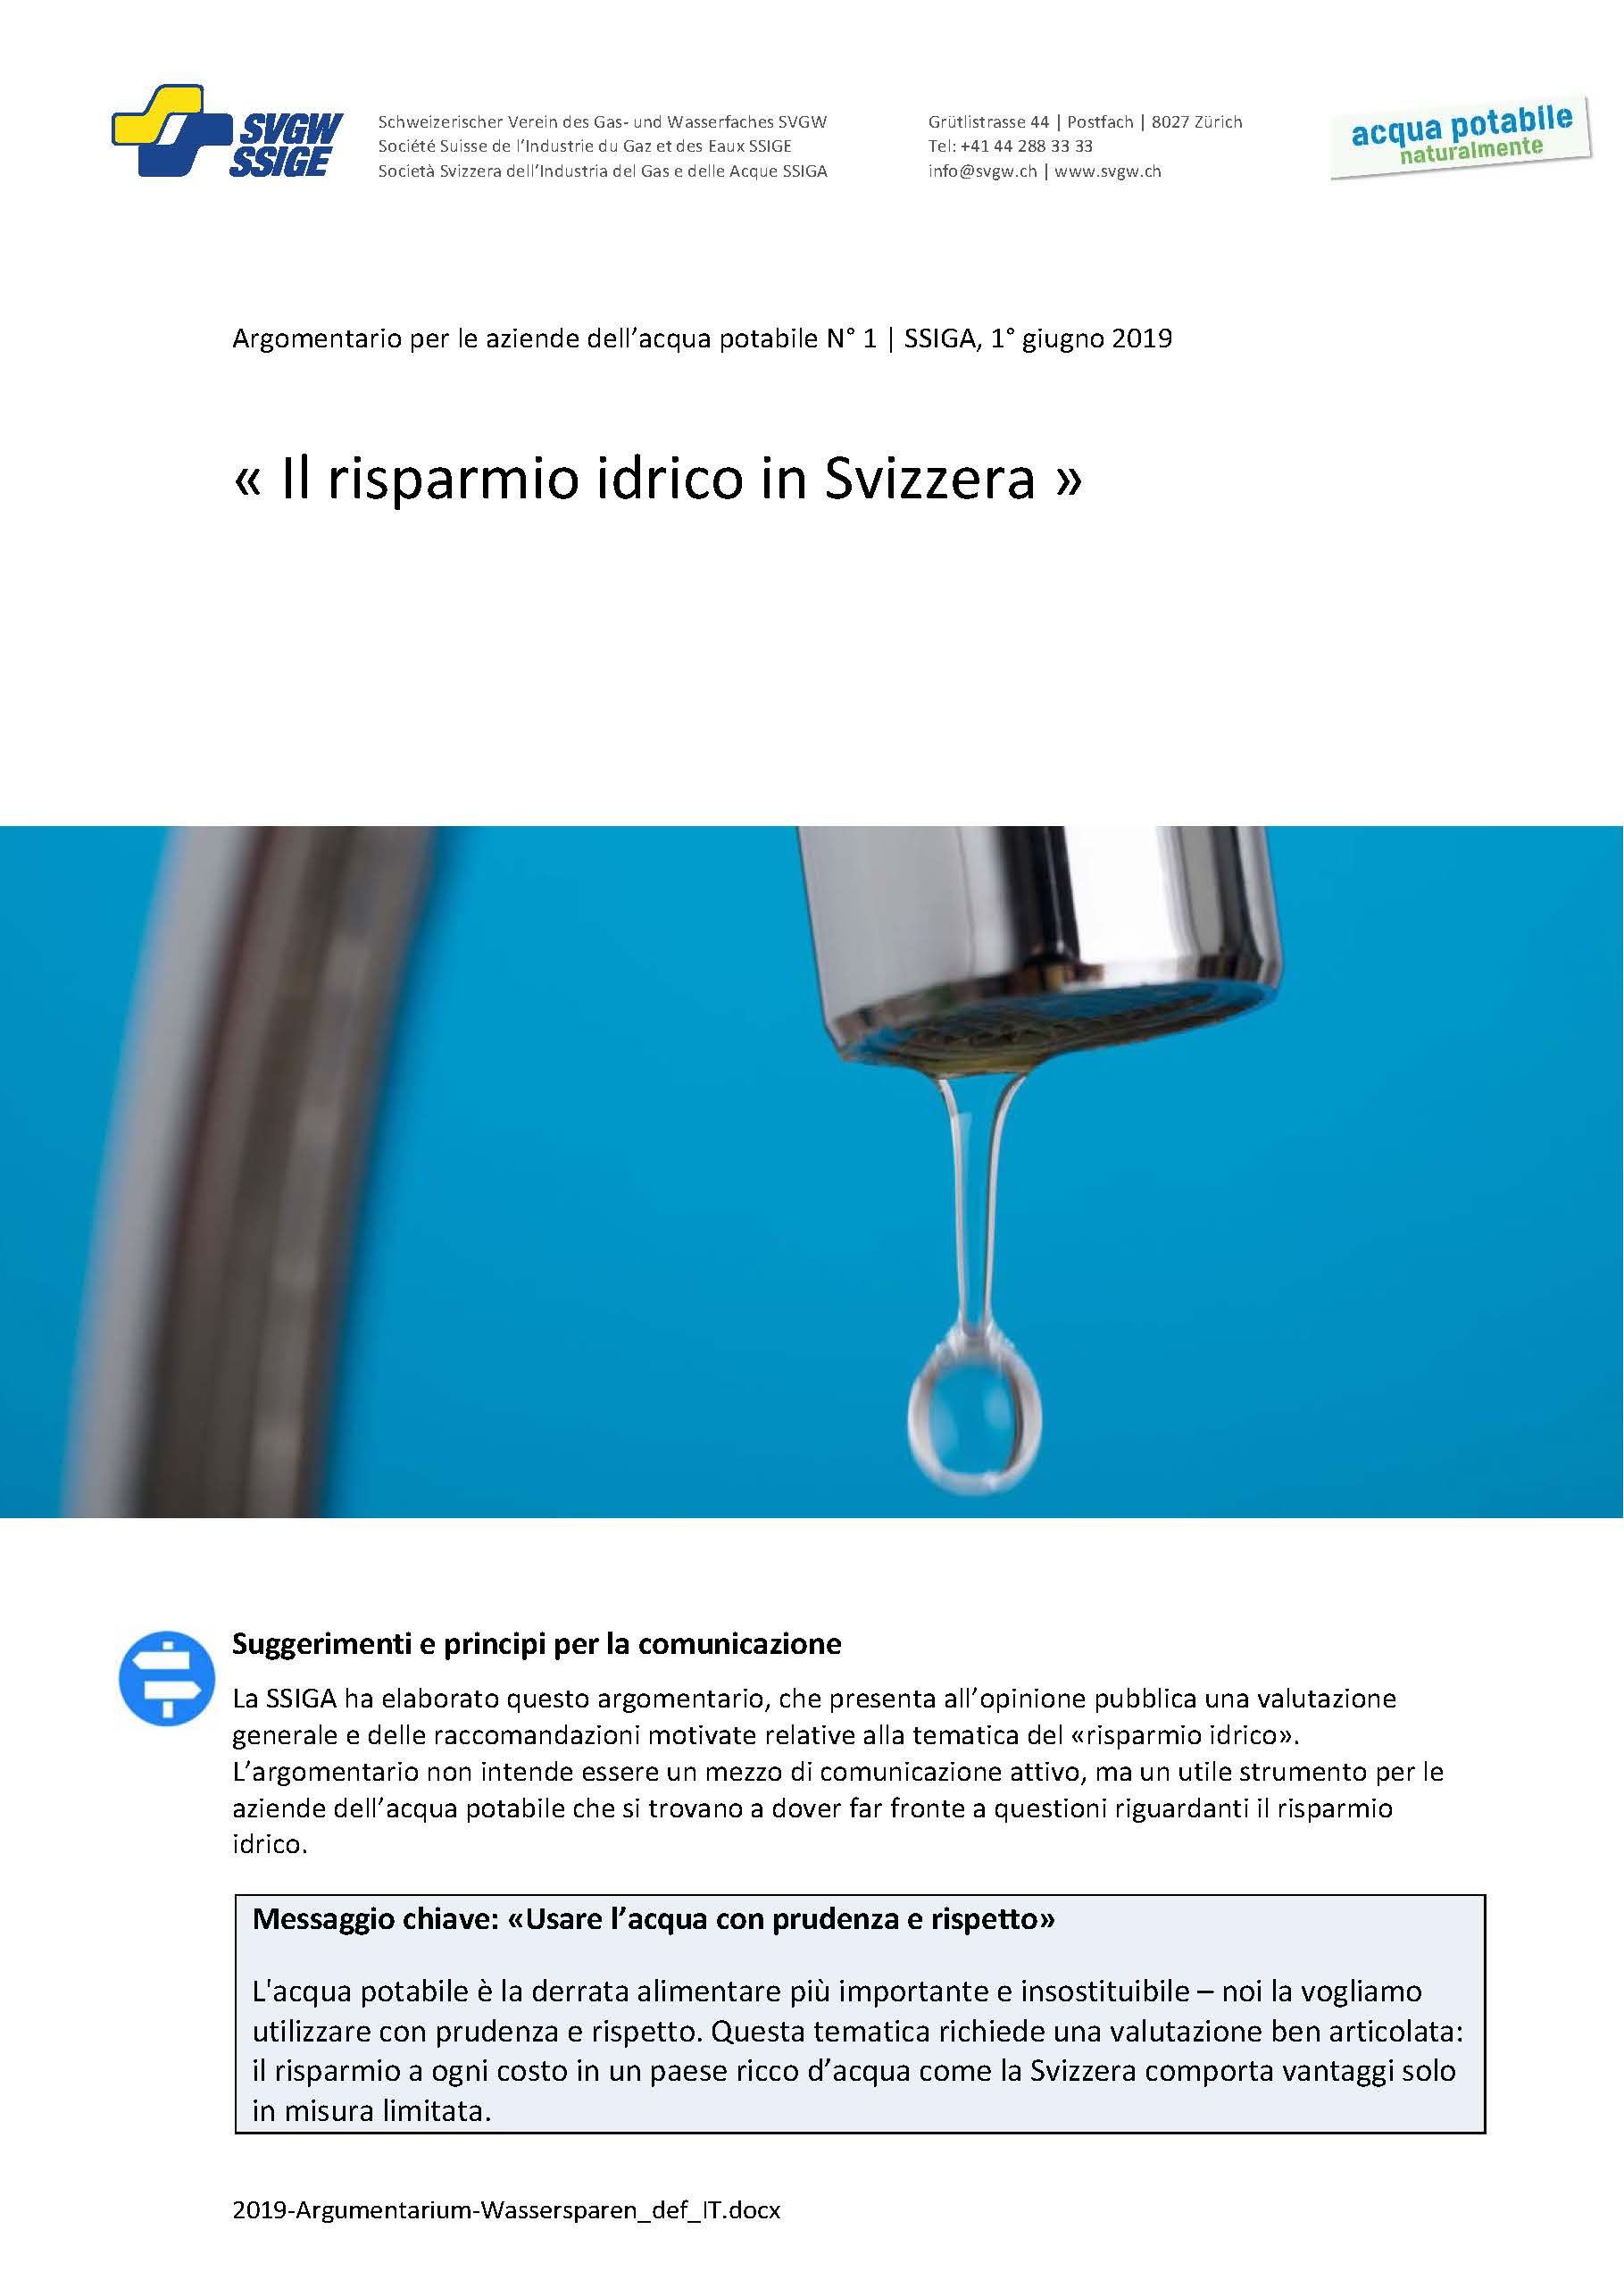 Argomentazione: «Il risparmio idrico in Svizzera»